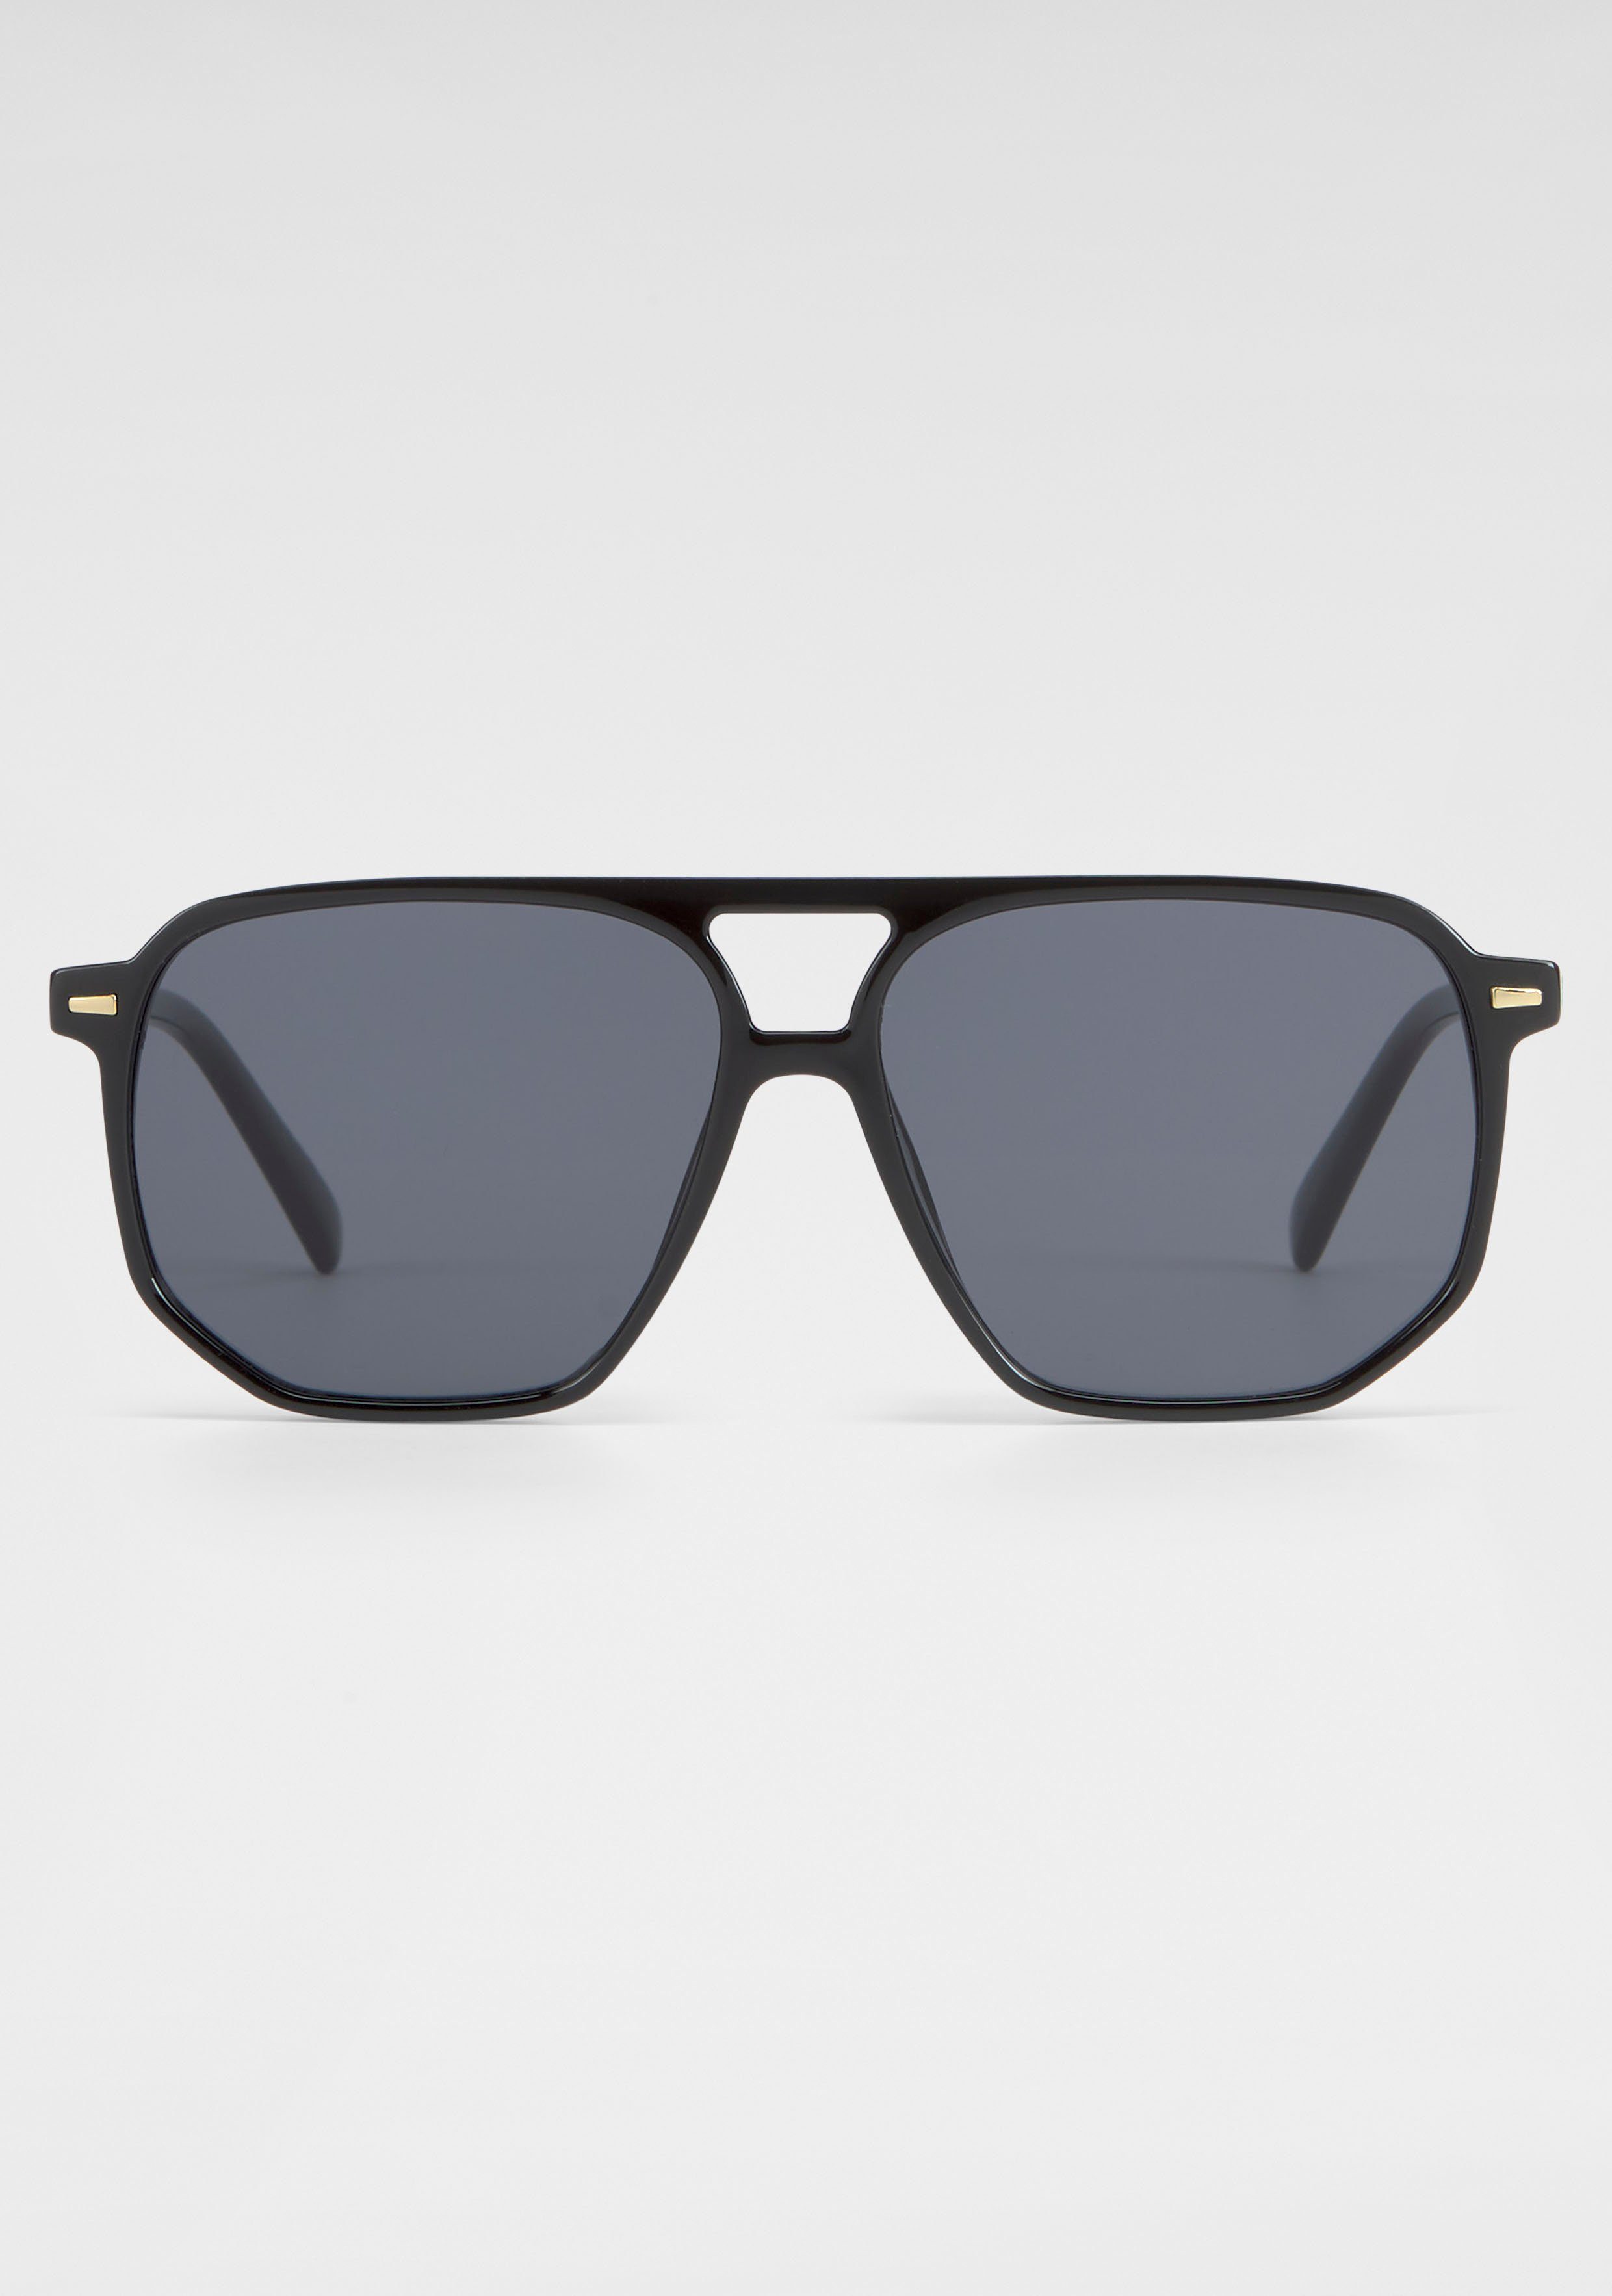 YOUNG Eyewear schwarz Sonnenbrille Vollrand-Sonnenbrille Trendige SPIRIT LONDON